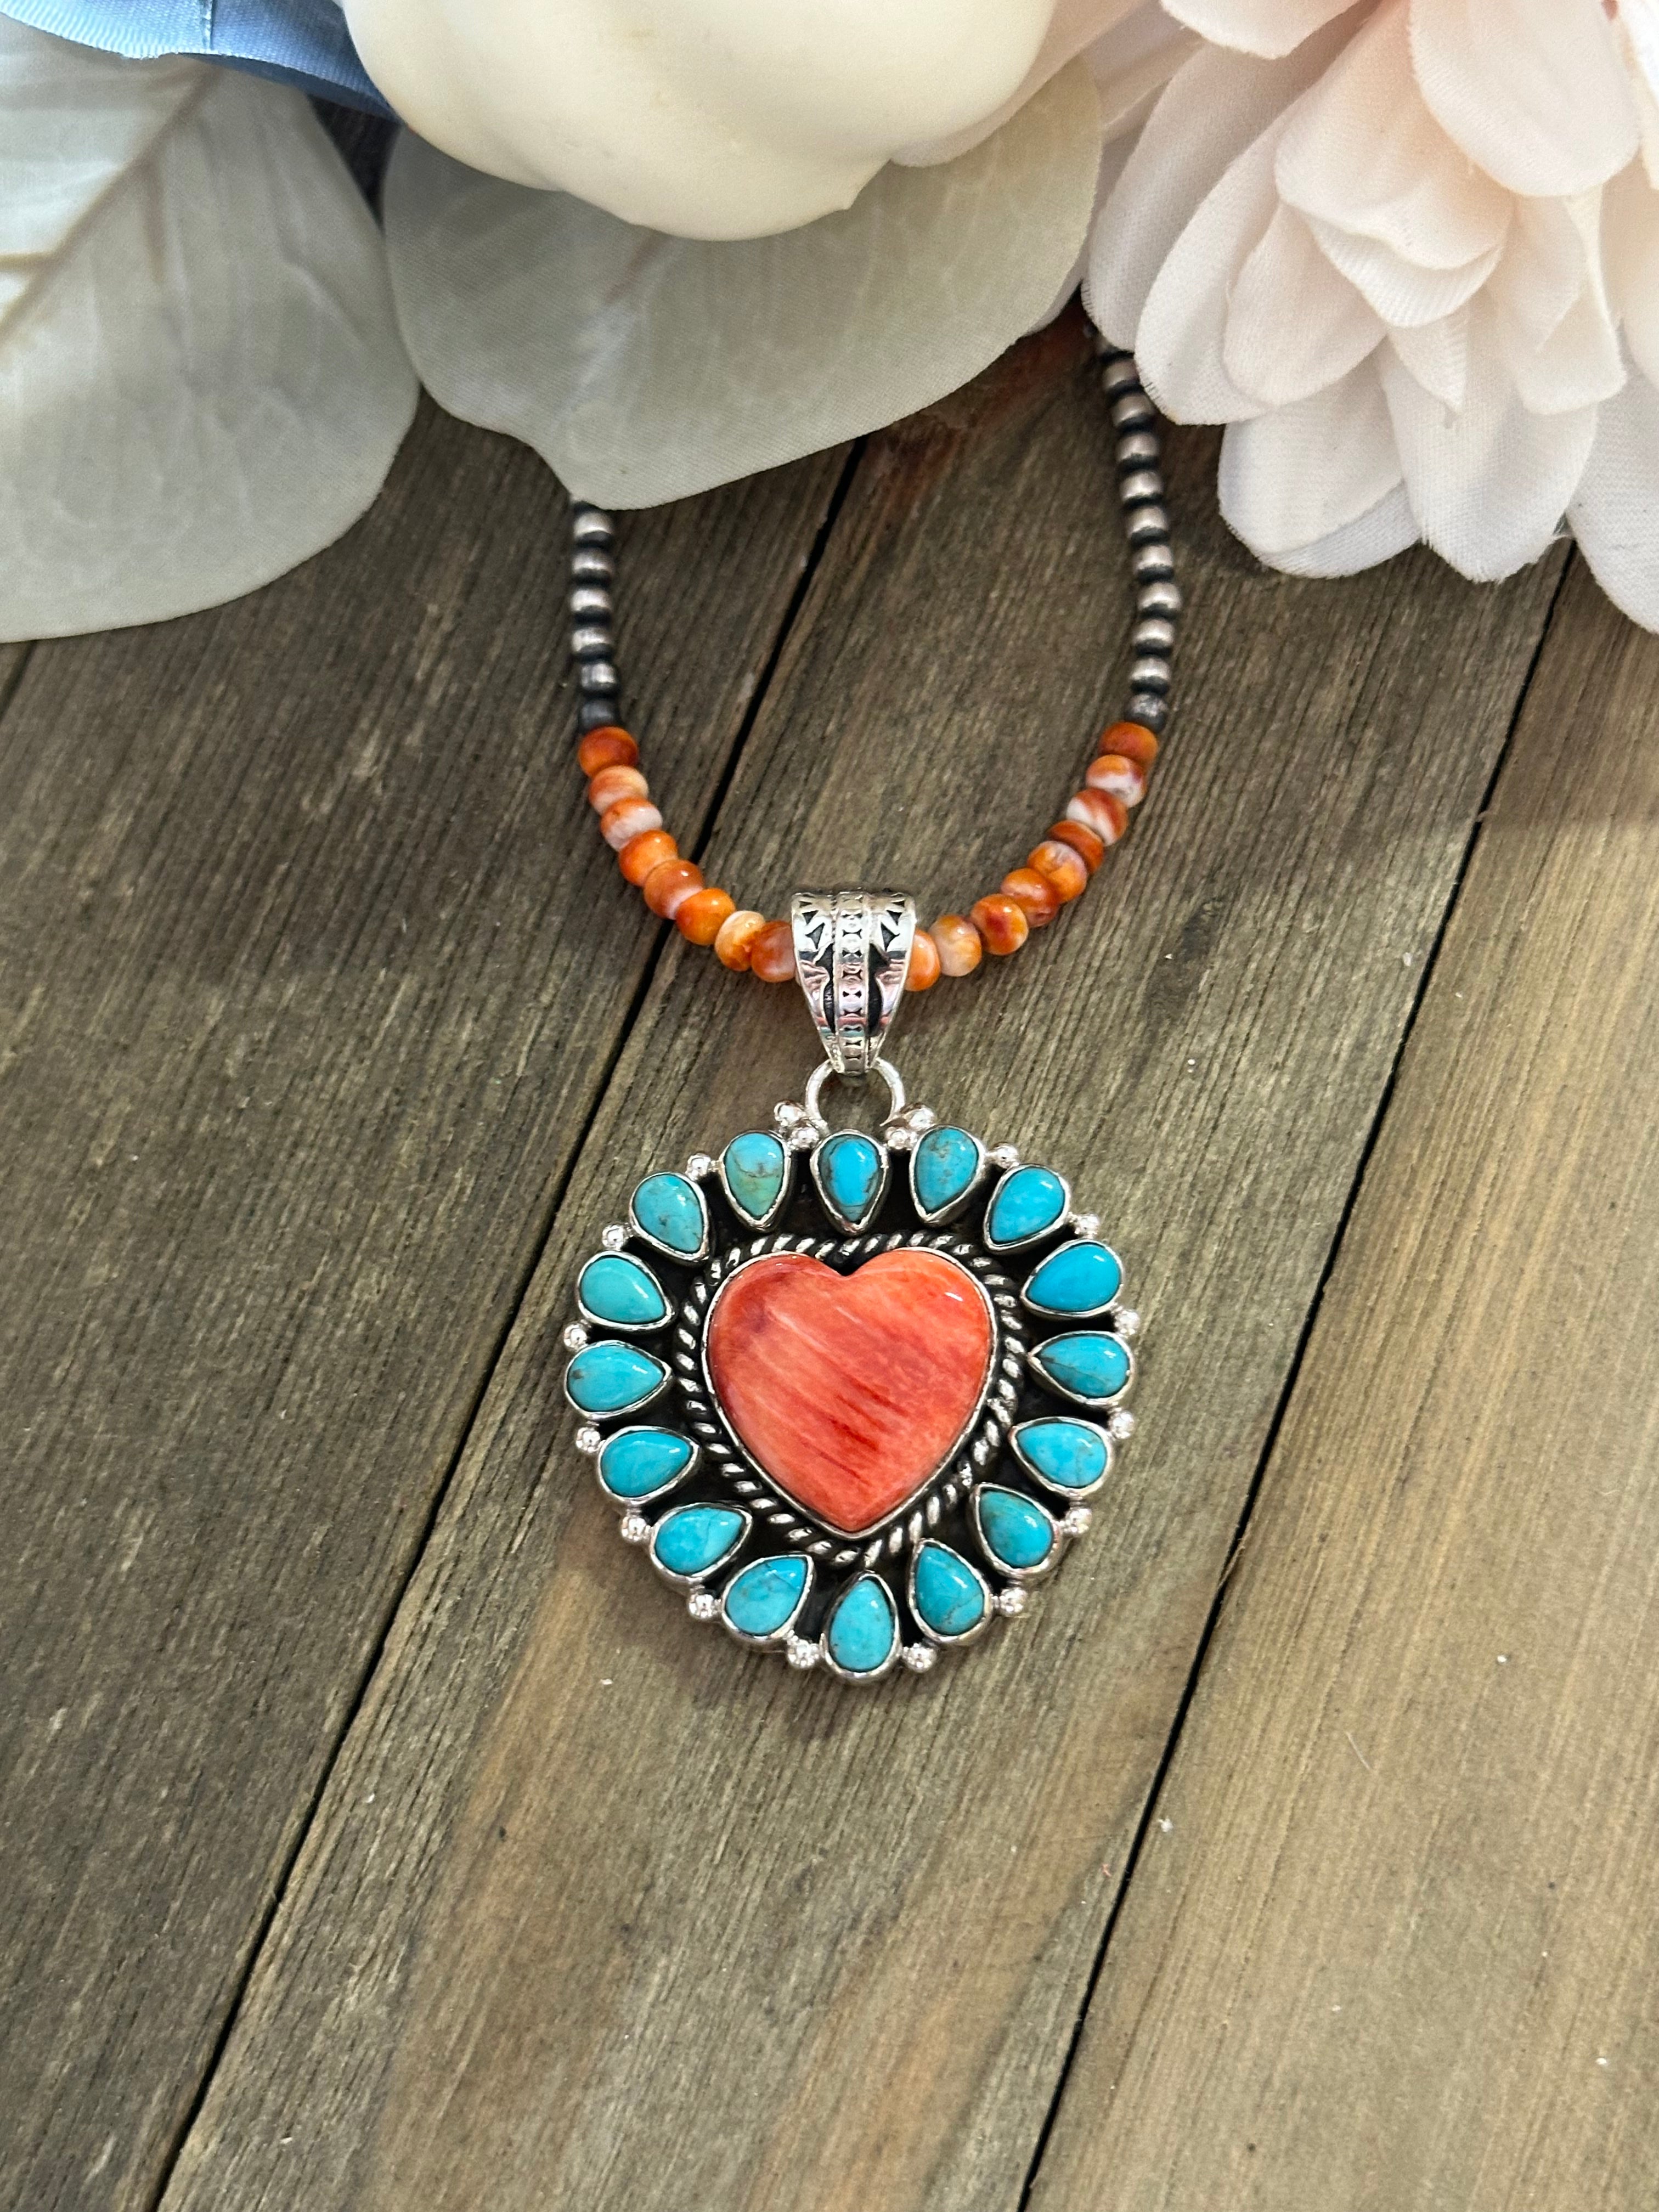 Southwest Handmade Multi Stone & Sterling Silver Heart Pendant